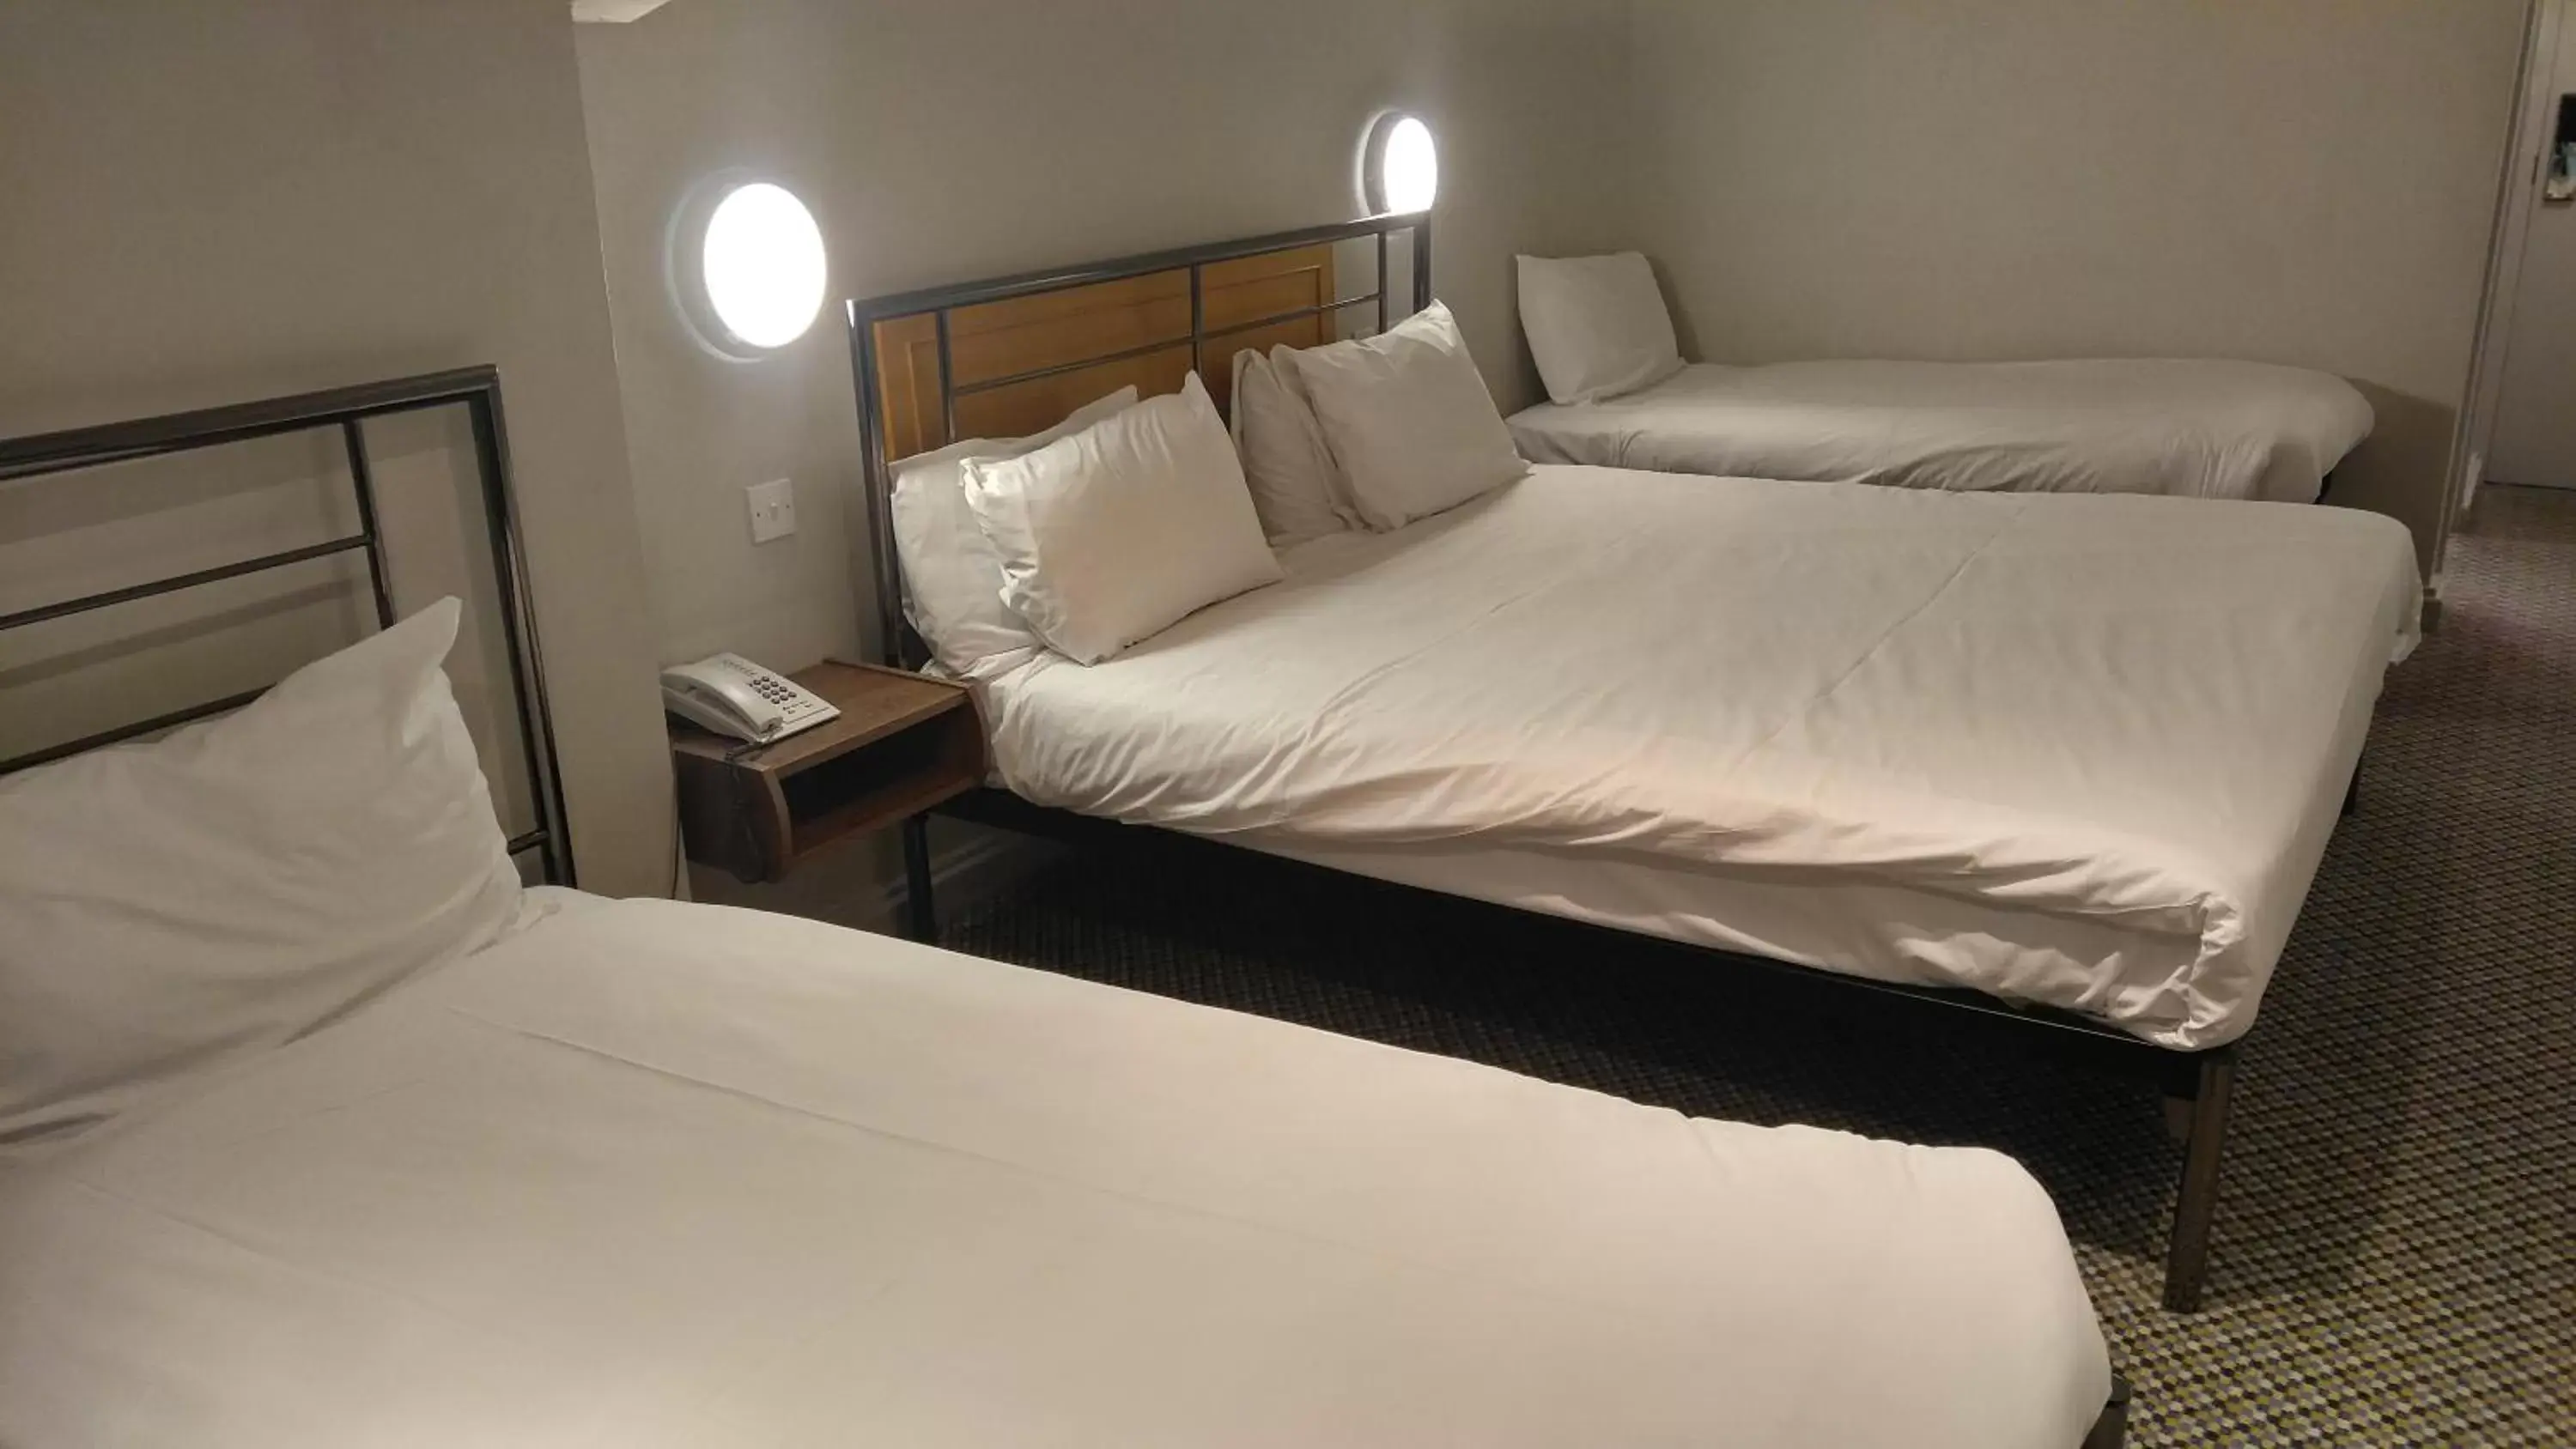 Bedroom, Bed in 247Hotel.com